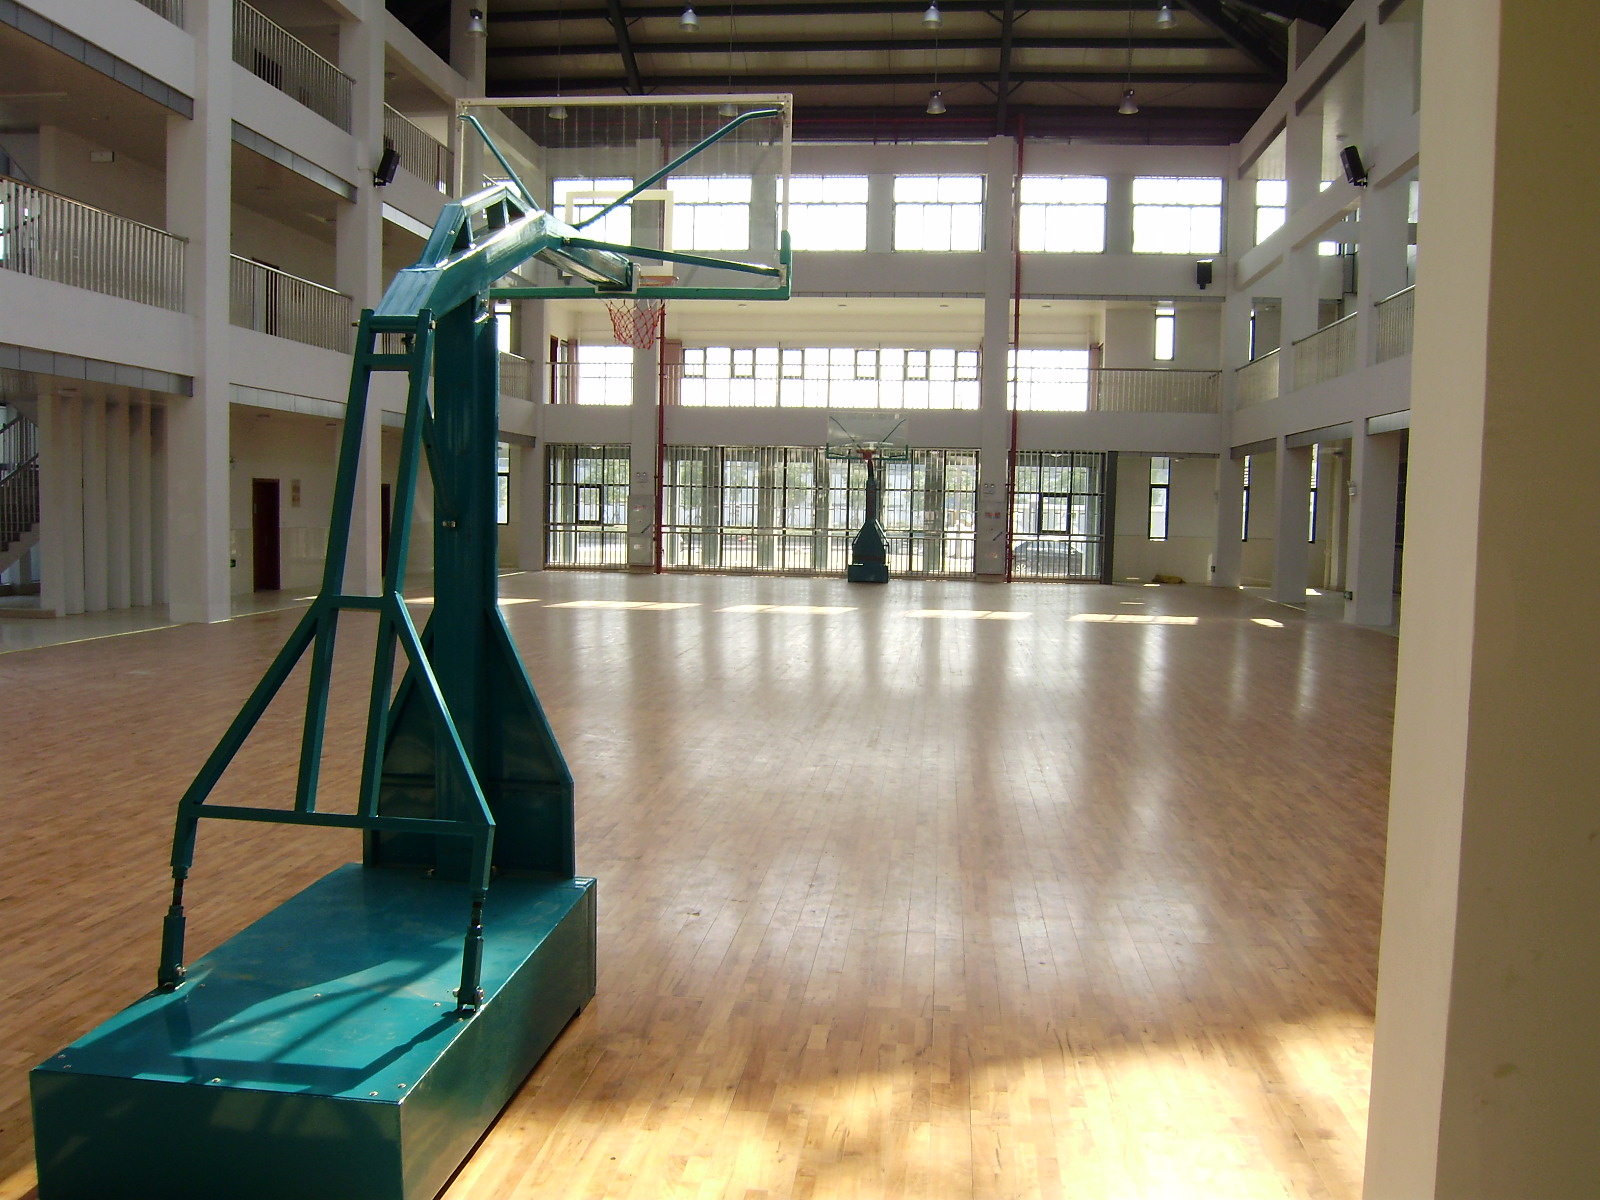 铺设室内篮球木地板有哪些质量要求？